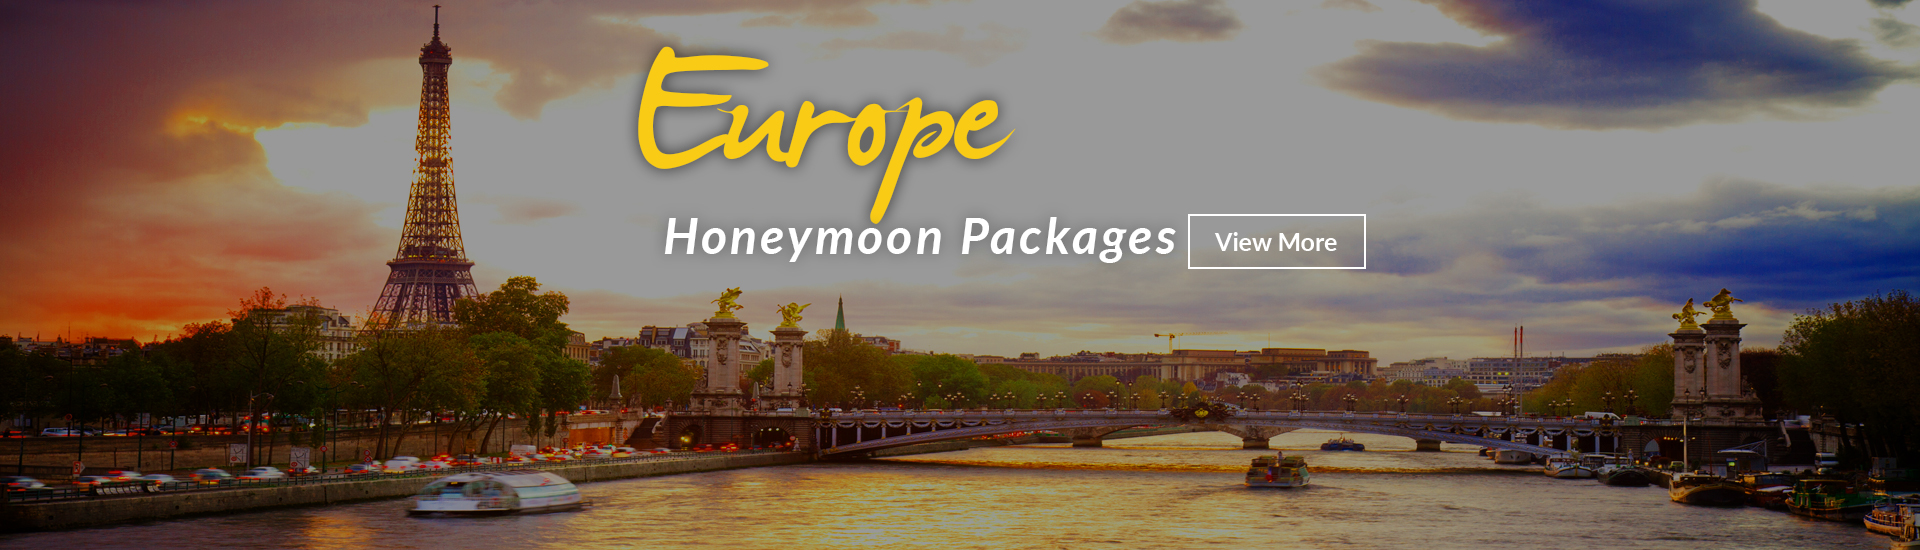 Europe Honeymoon Packages